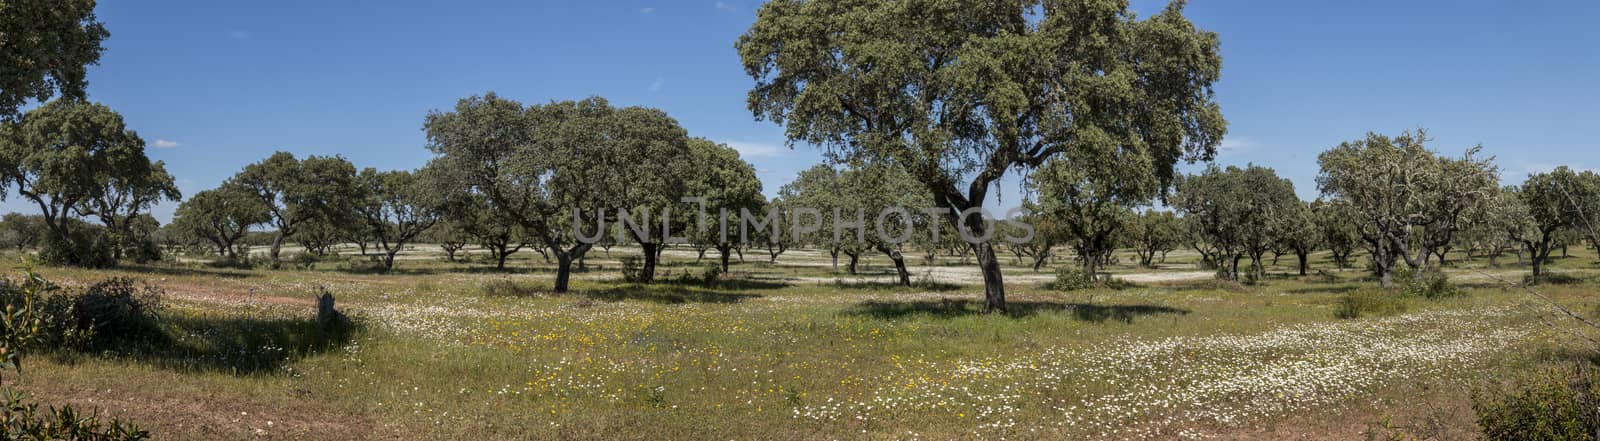 Spring landscape in Alentejo by membio